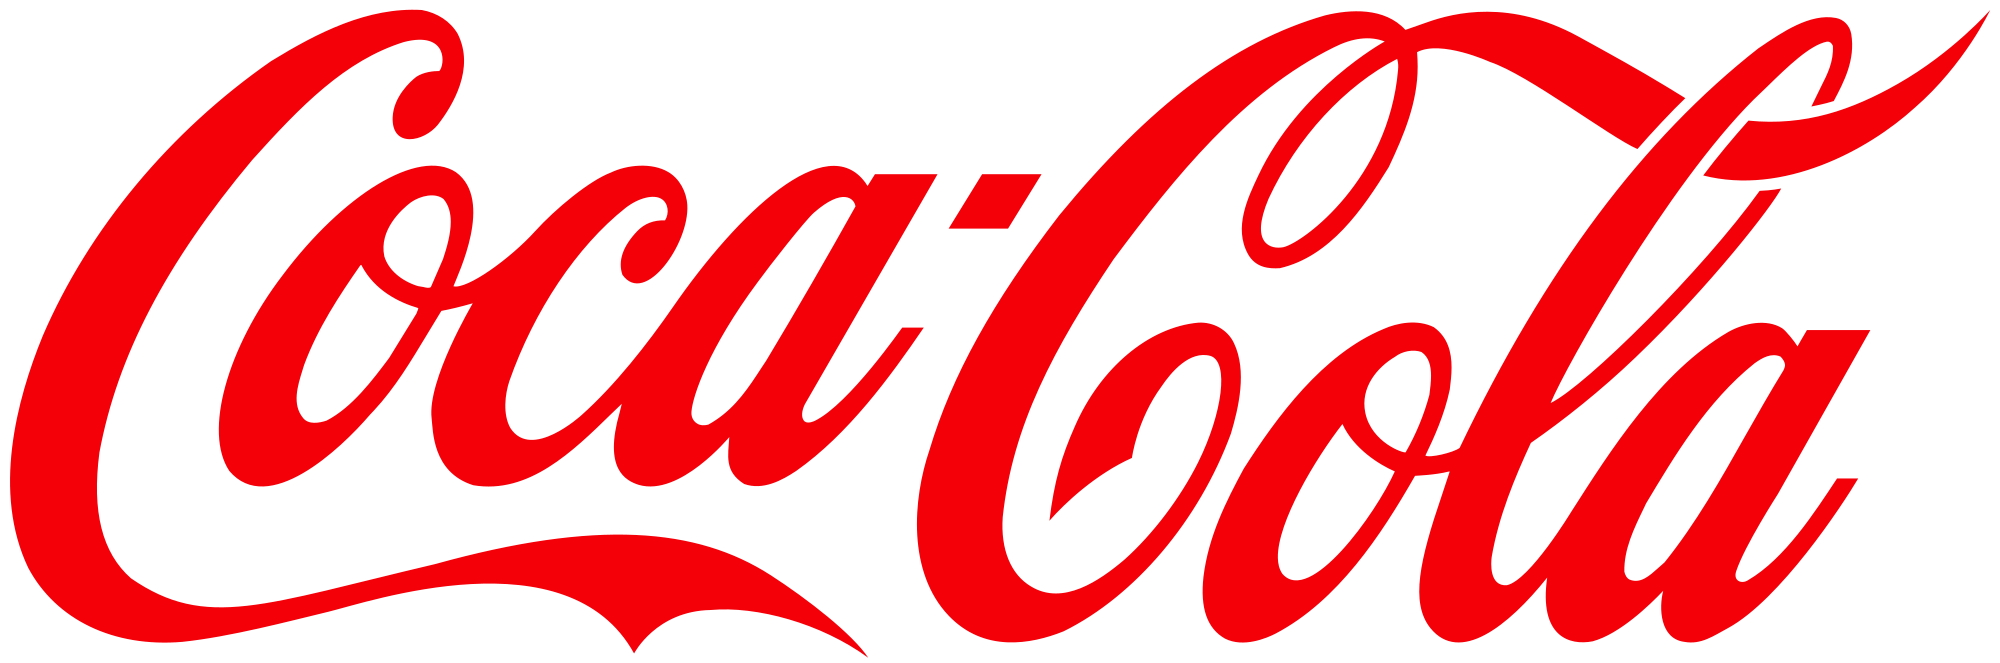 coke logo.png